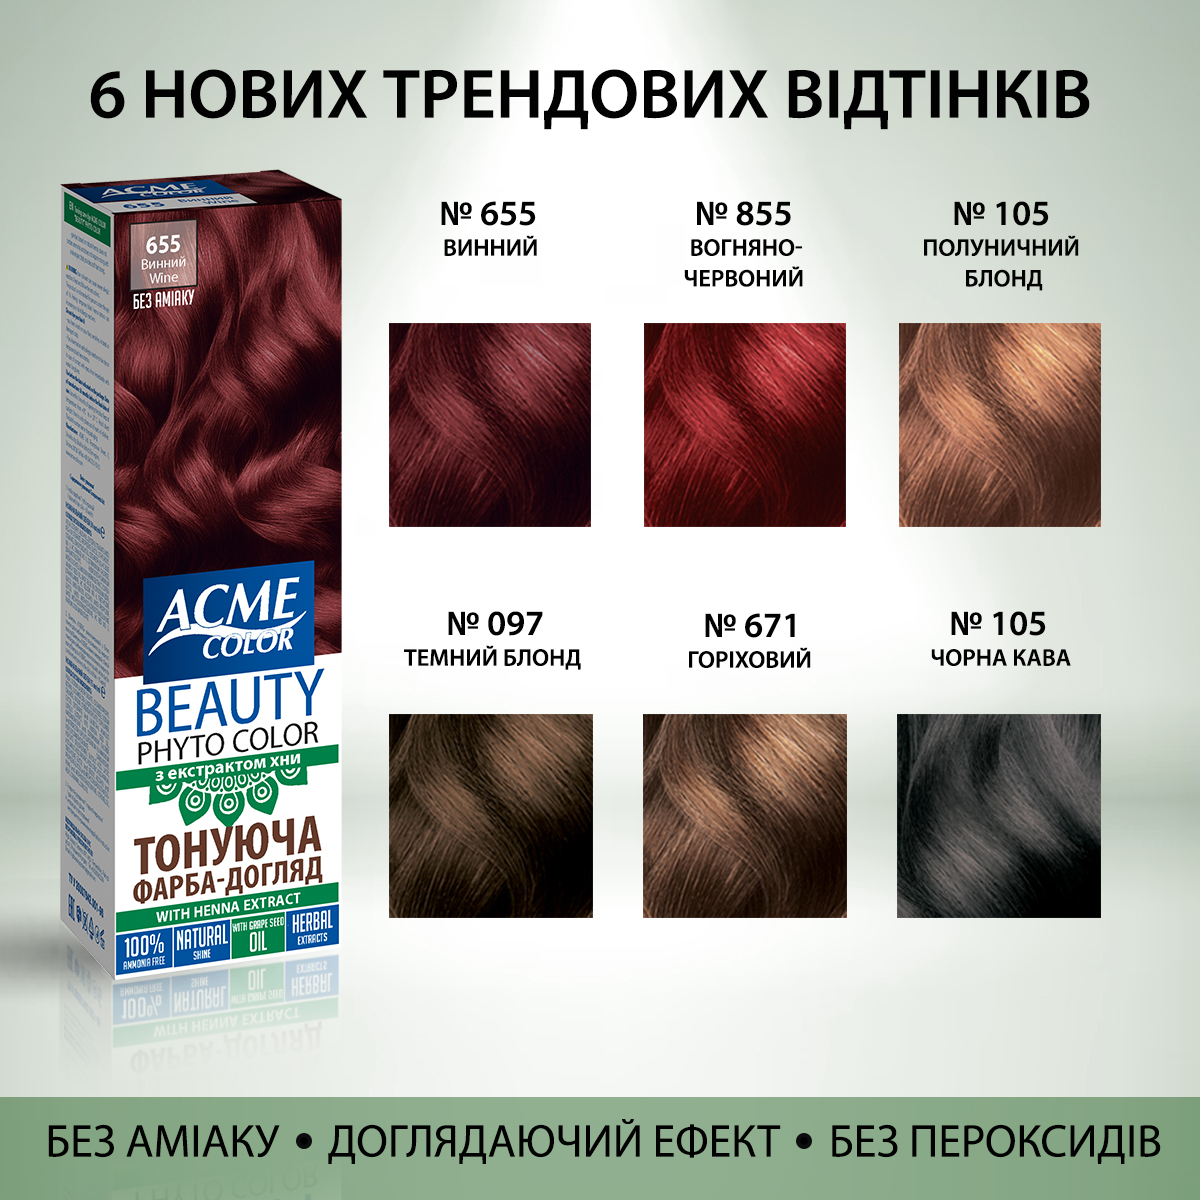 Гель-фарба Acme Color Beauty Phyto Color, відтінок 097, темний блонд, 60 мл - фото 5